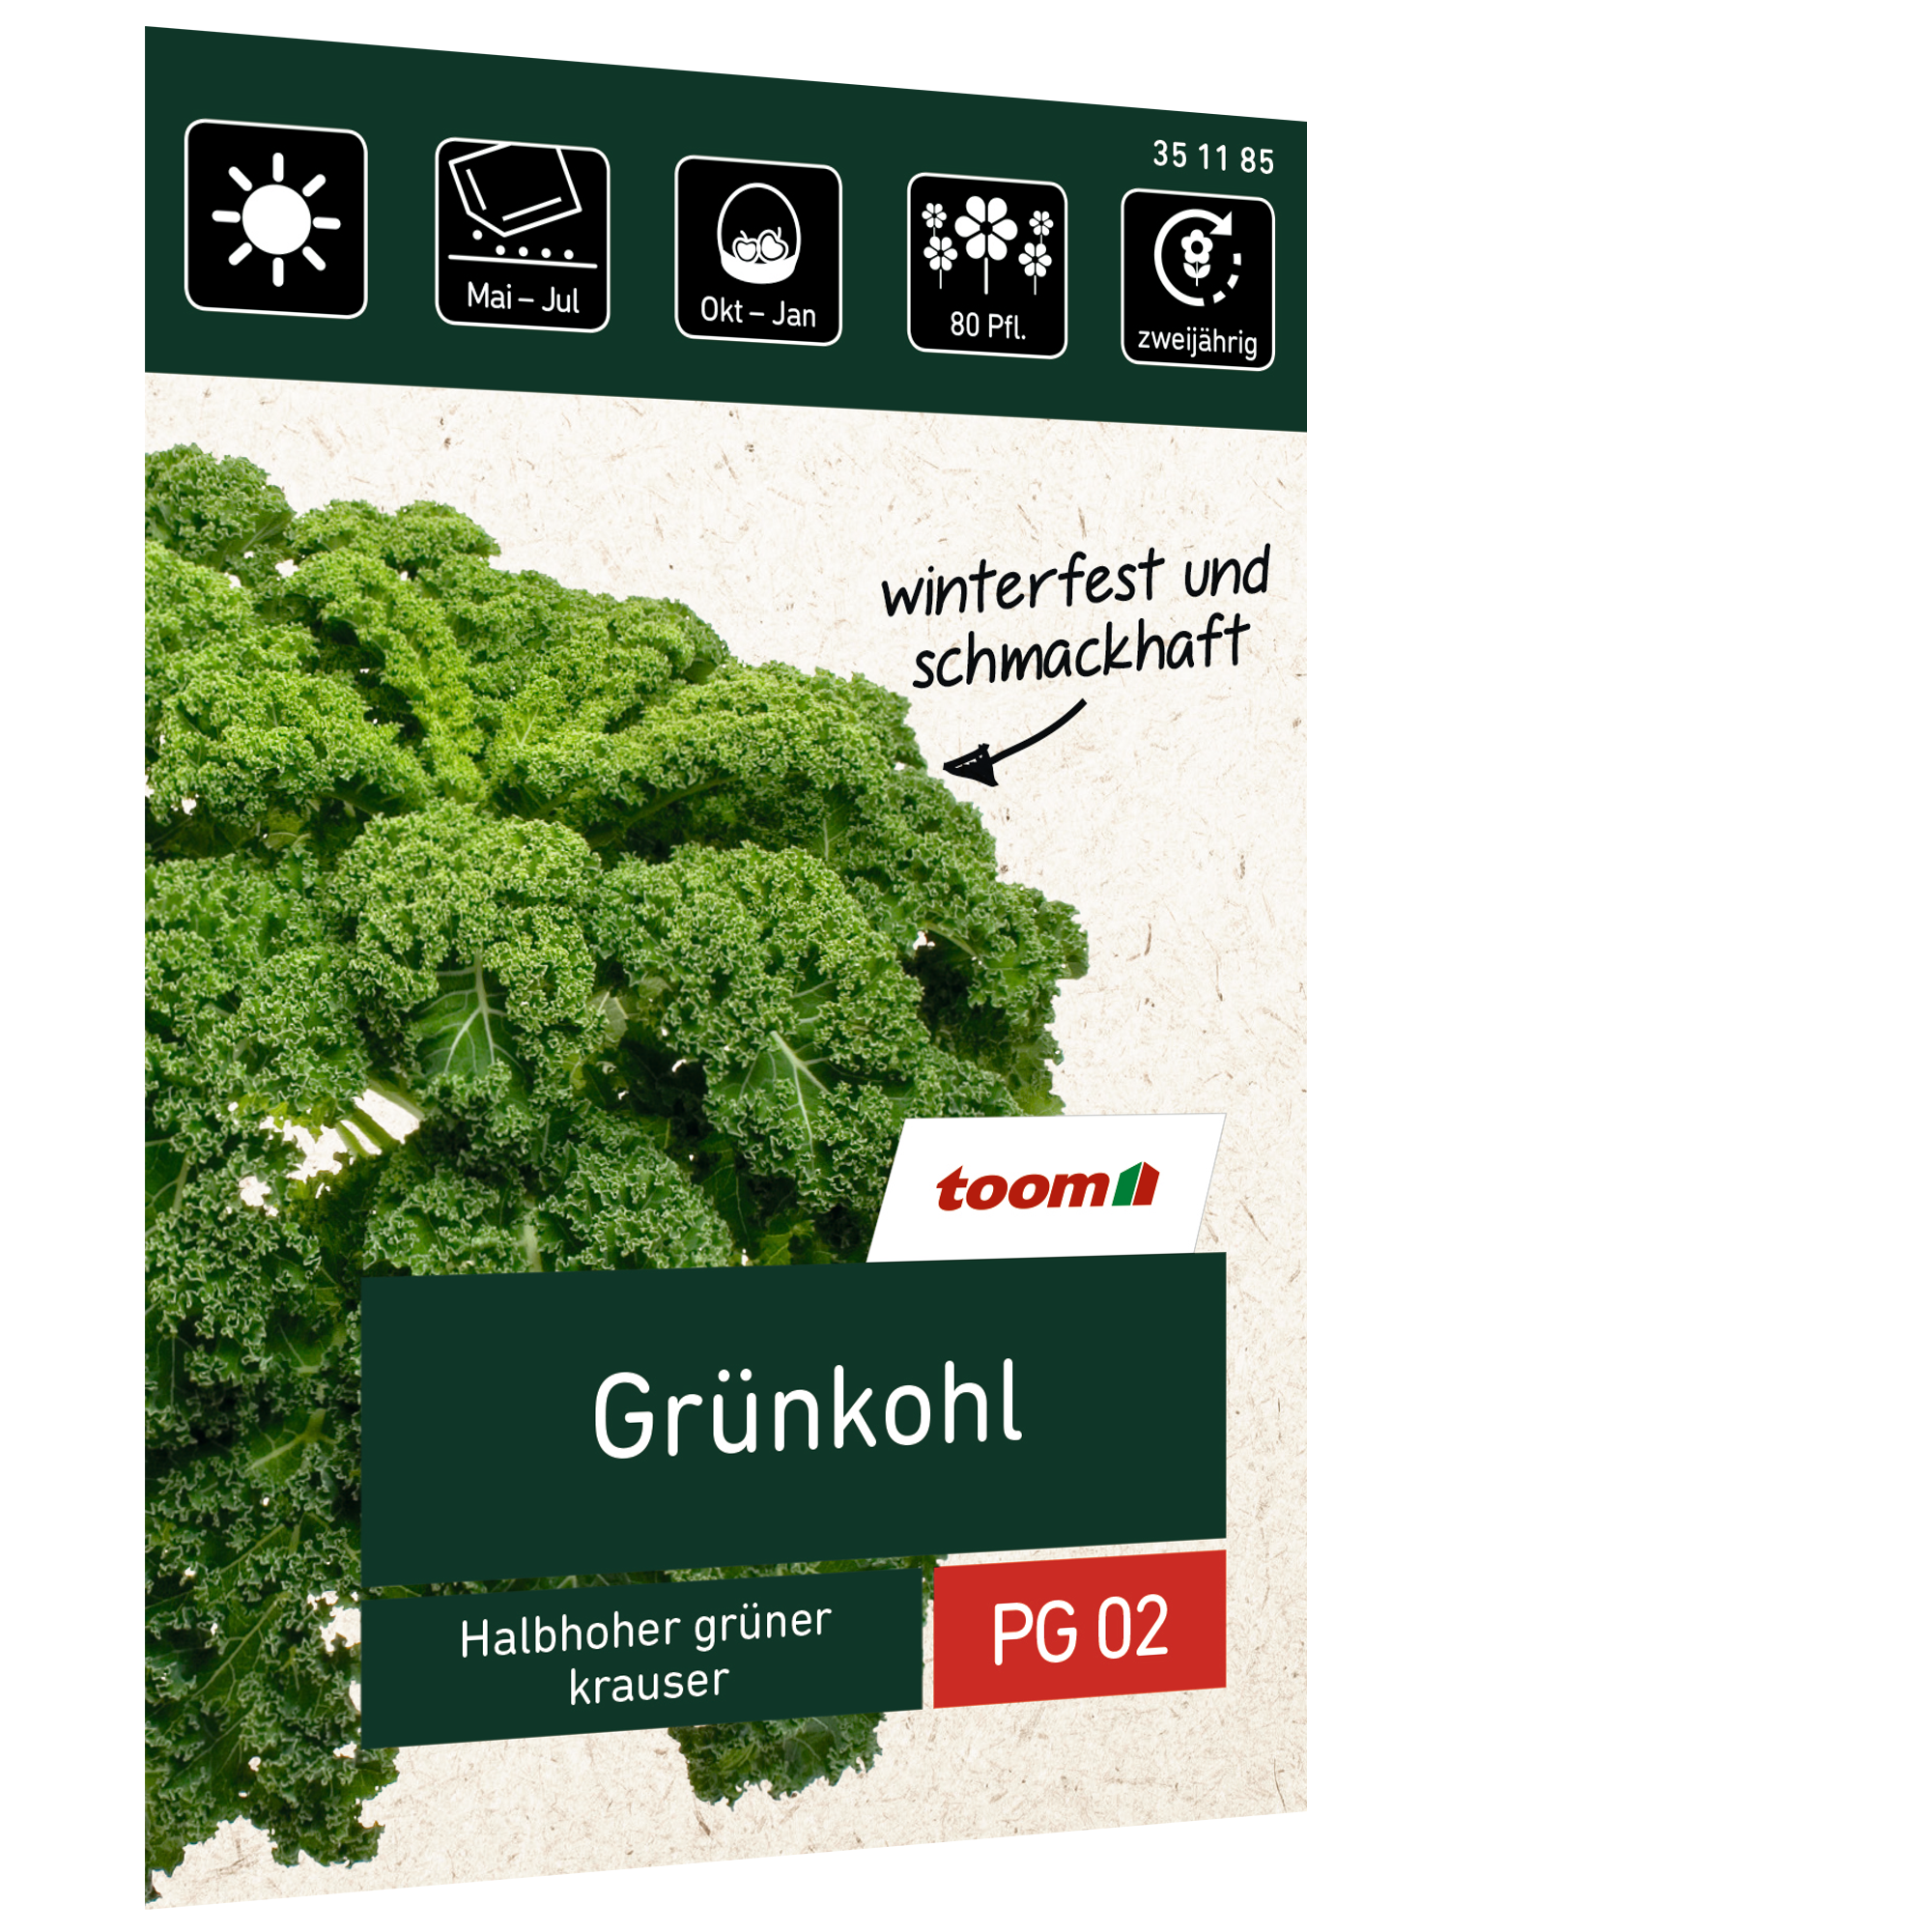 Grünkohl 'Halbhoher grüner krauser' + product picture